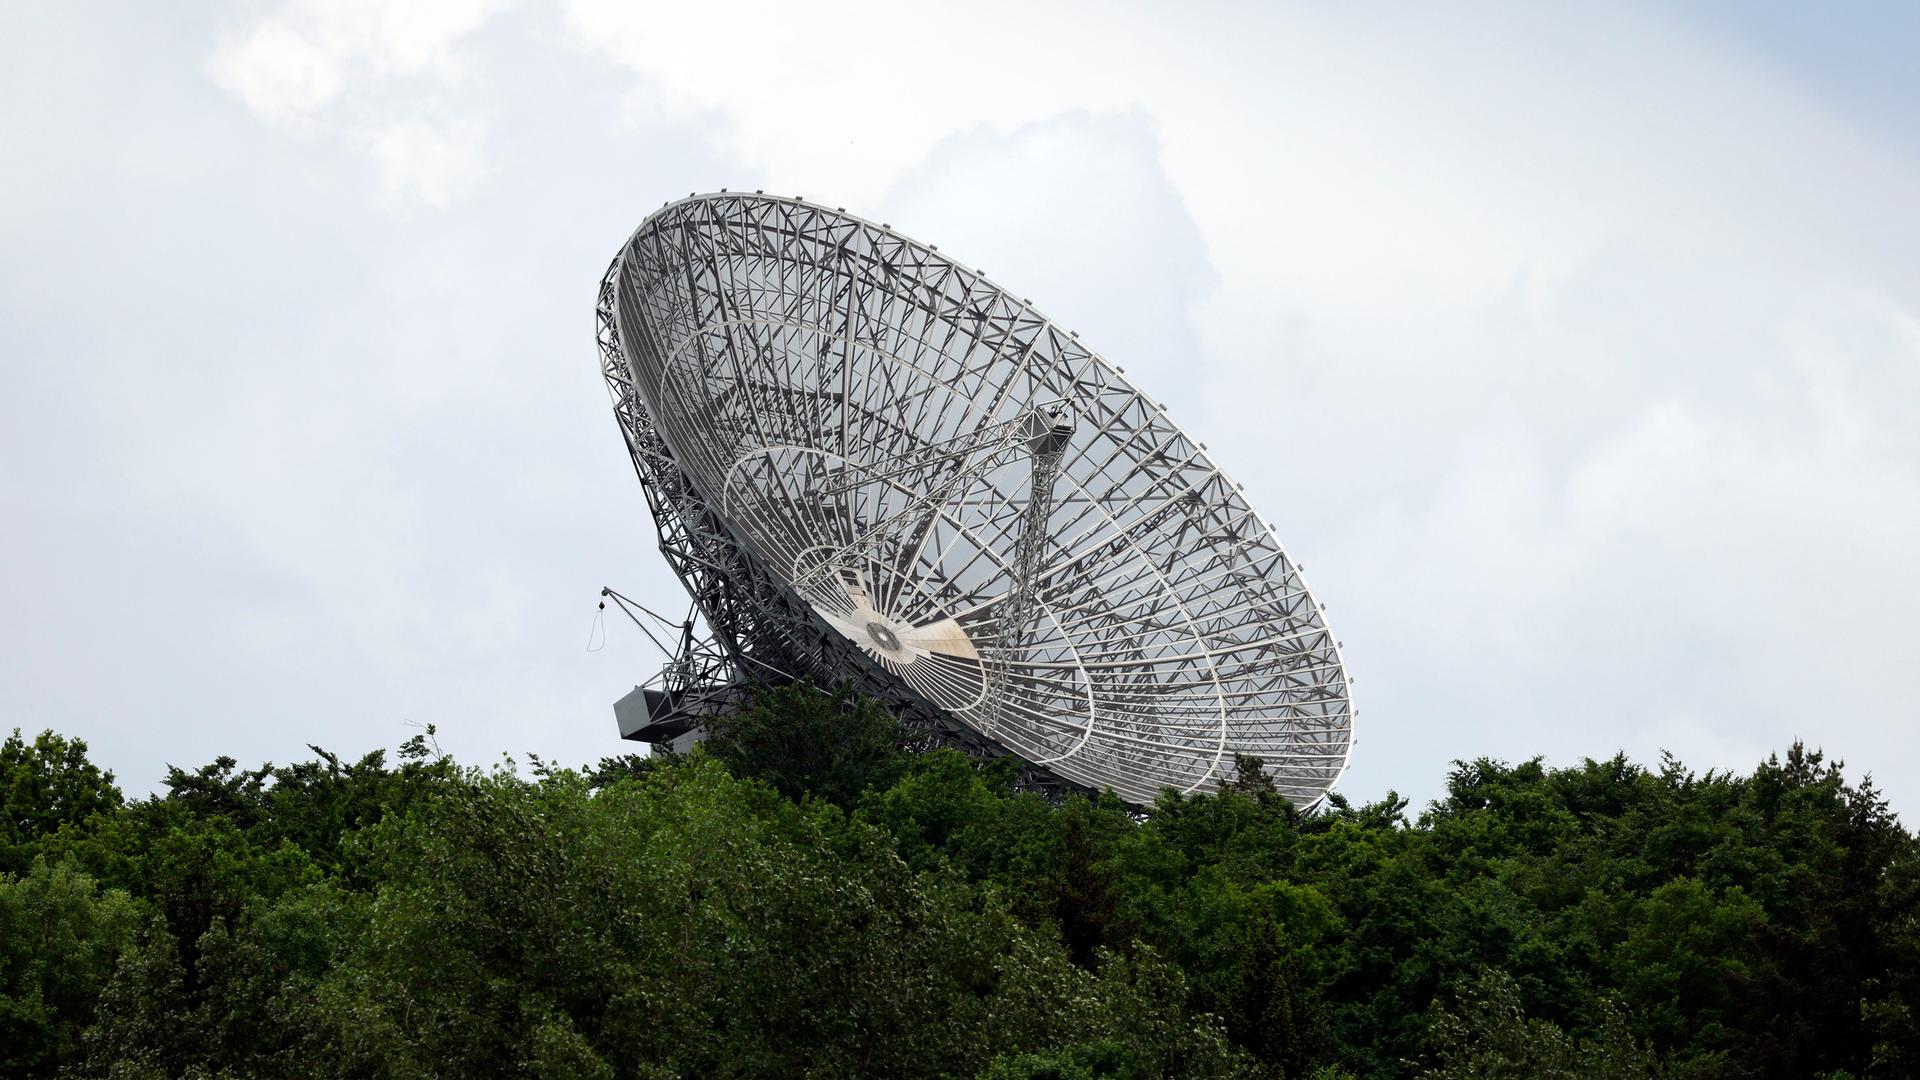 Der Astropeiler Stockert im nordrhein-westfälischen Kreis Euskirchen ist ein Radioteleskop mit 25 Meter-Spiegeldurchmesser auf dem Berg Stockert in der Eifel bei Bad Münstereifel-Eschweiler. Es gilt als das erste frei bewegliche Radioteleskop Deutschlands.